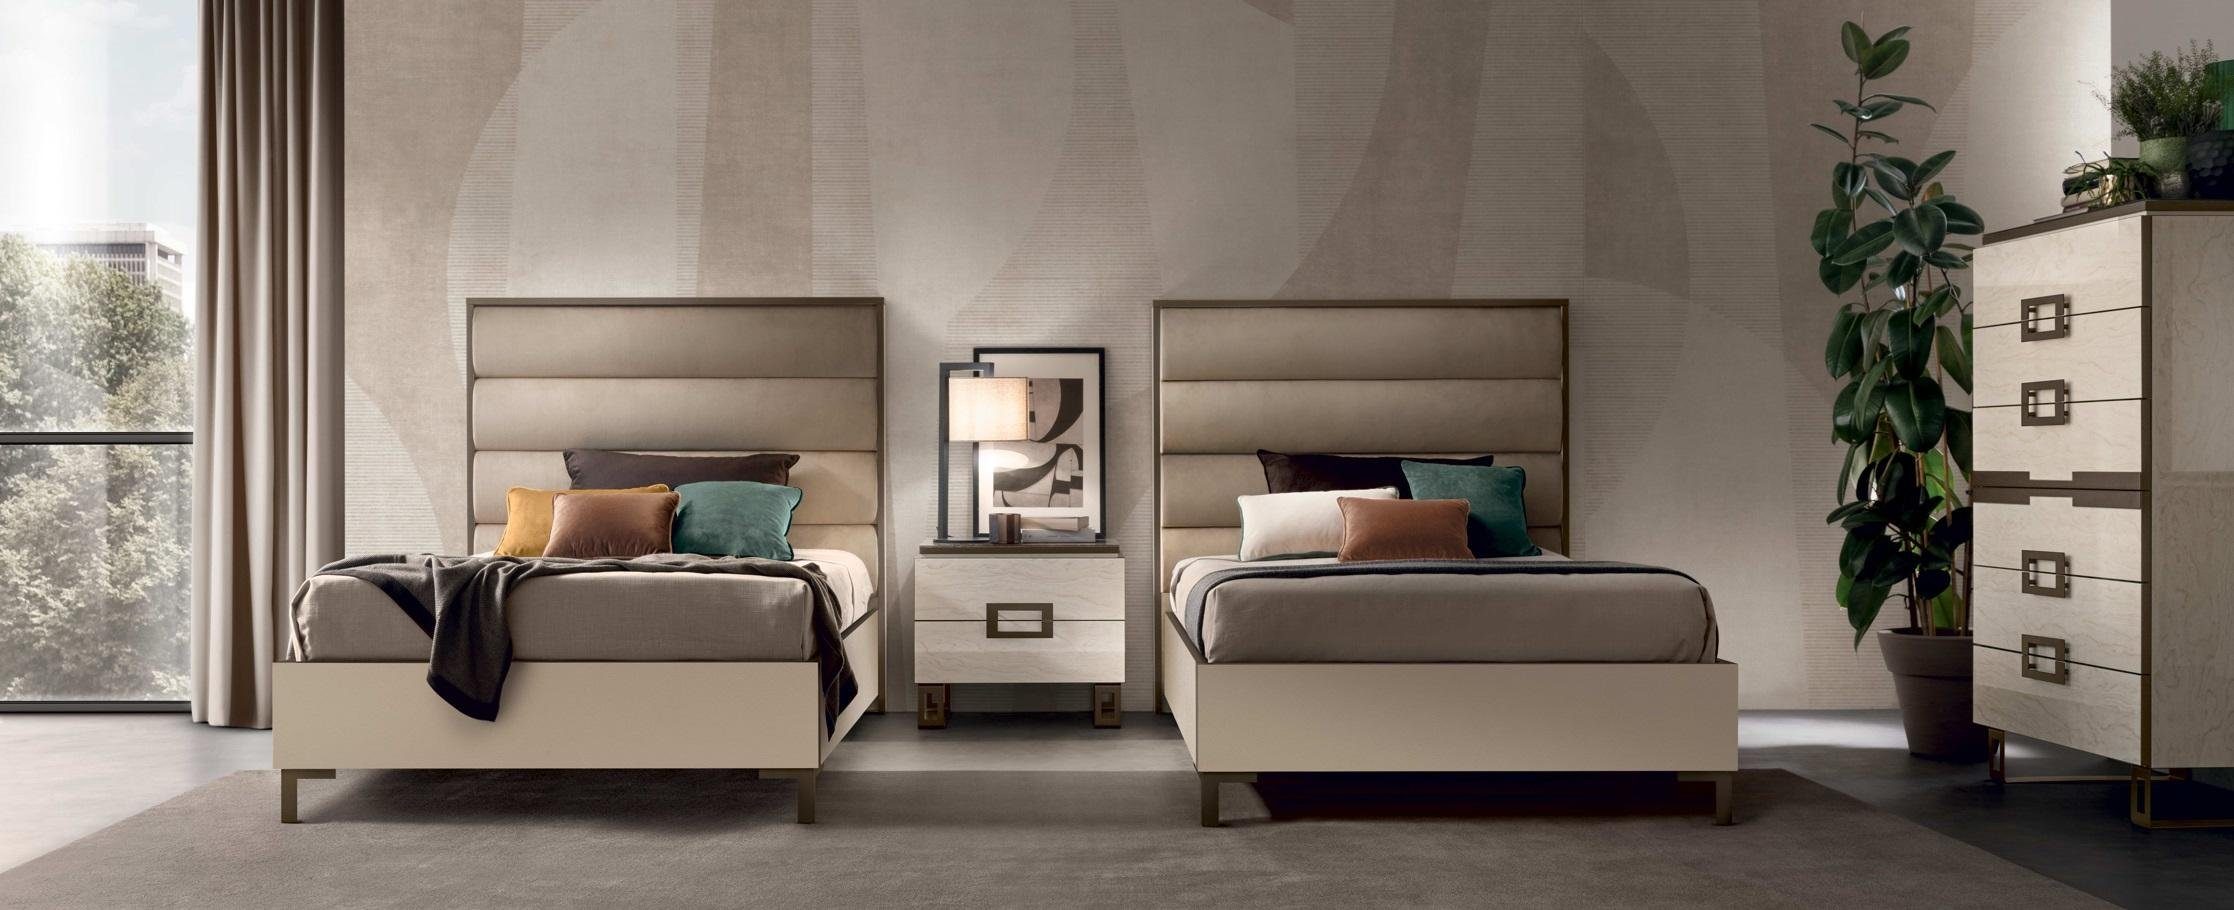 JVmoebel Schlafzimmer-Set Hotel Einrichtung 2x Betten + Nachttisch Design Moderne Luxus 3tlg.